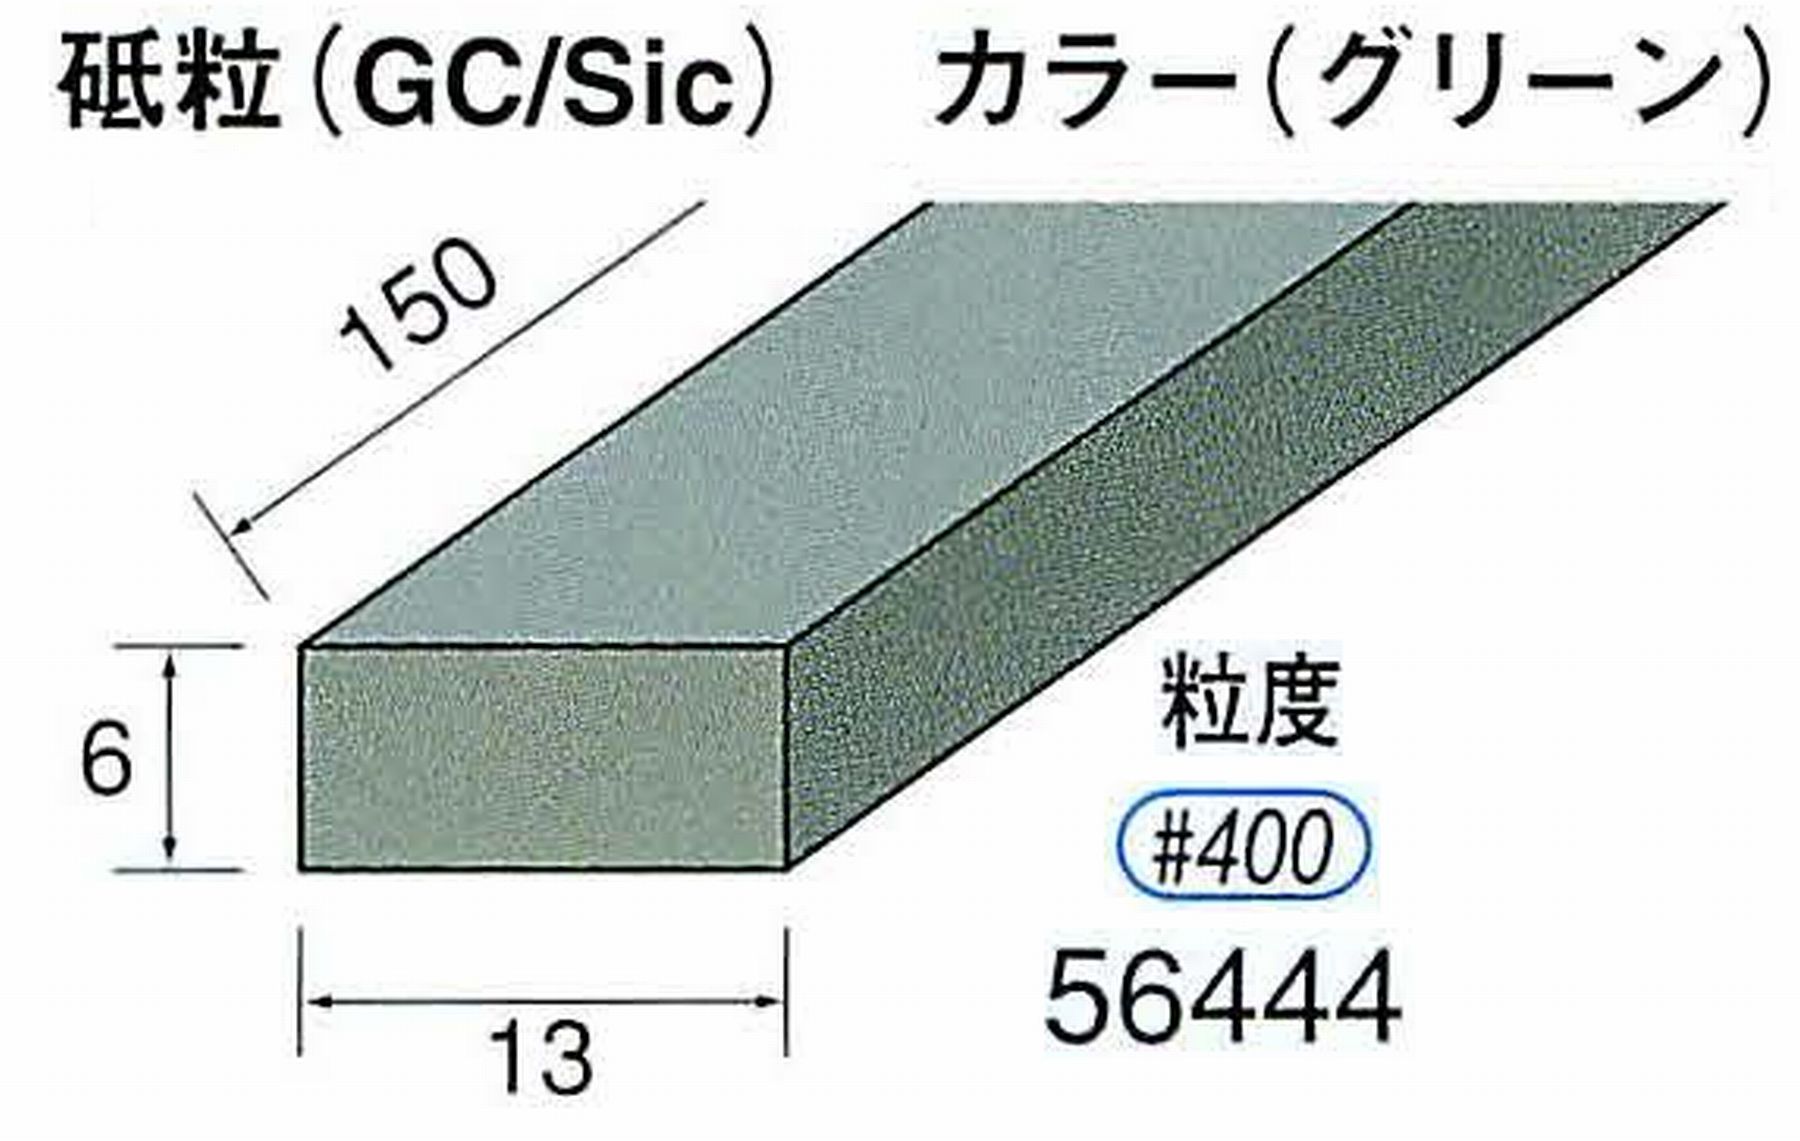 ナカニシ/NAKANISHI スティック砥石 グリーン・フィニッシュシリーズ 砥粒(GC/Sic) 56444